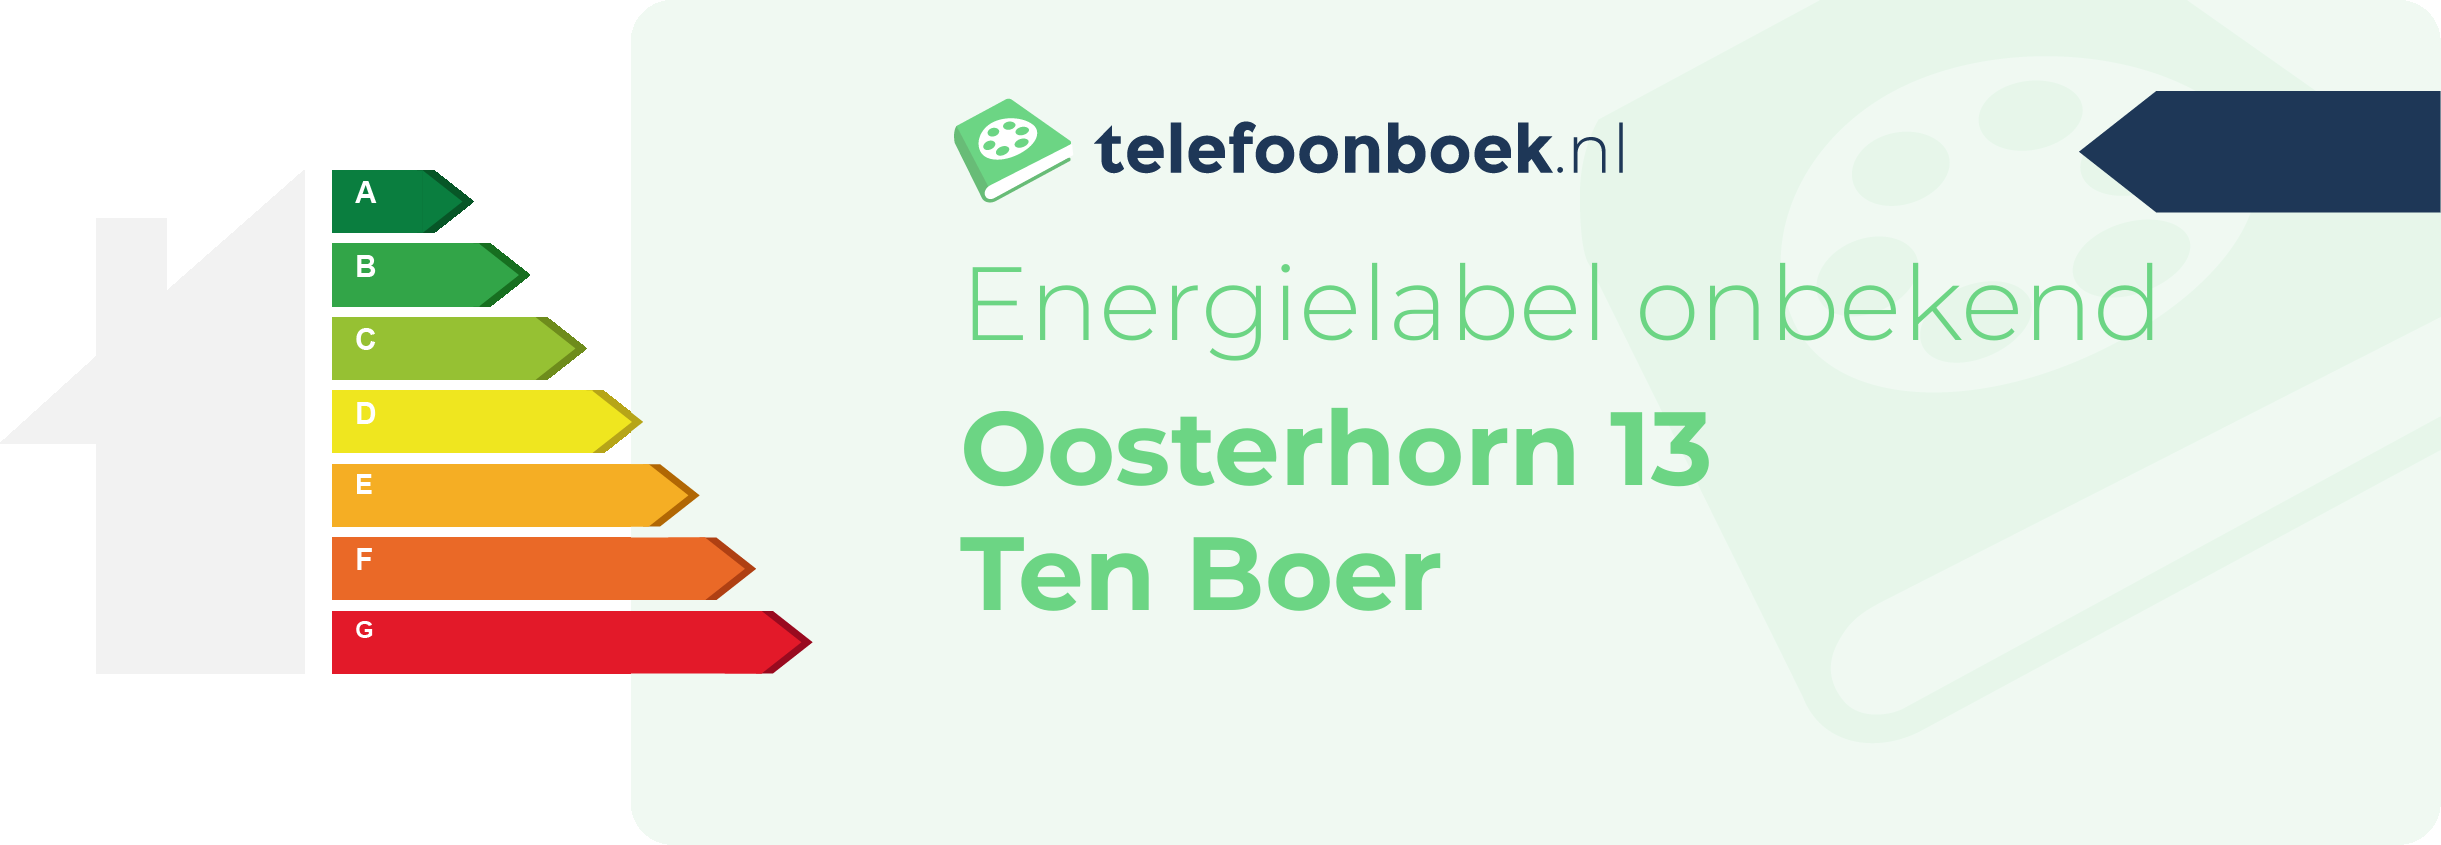 Energielabel Oosterhorn 13 Ten Boer